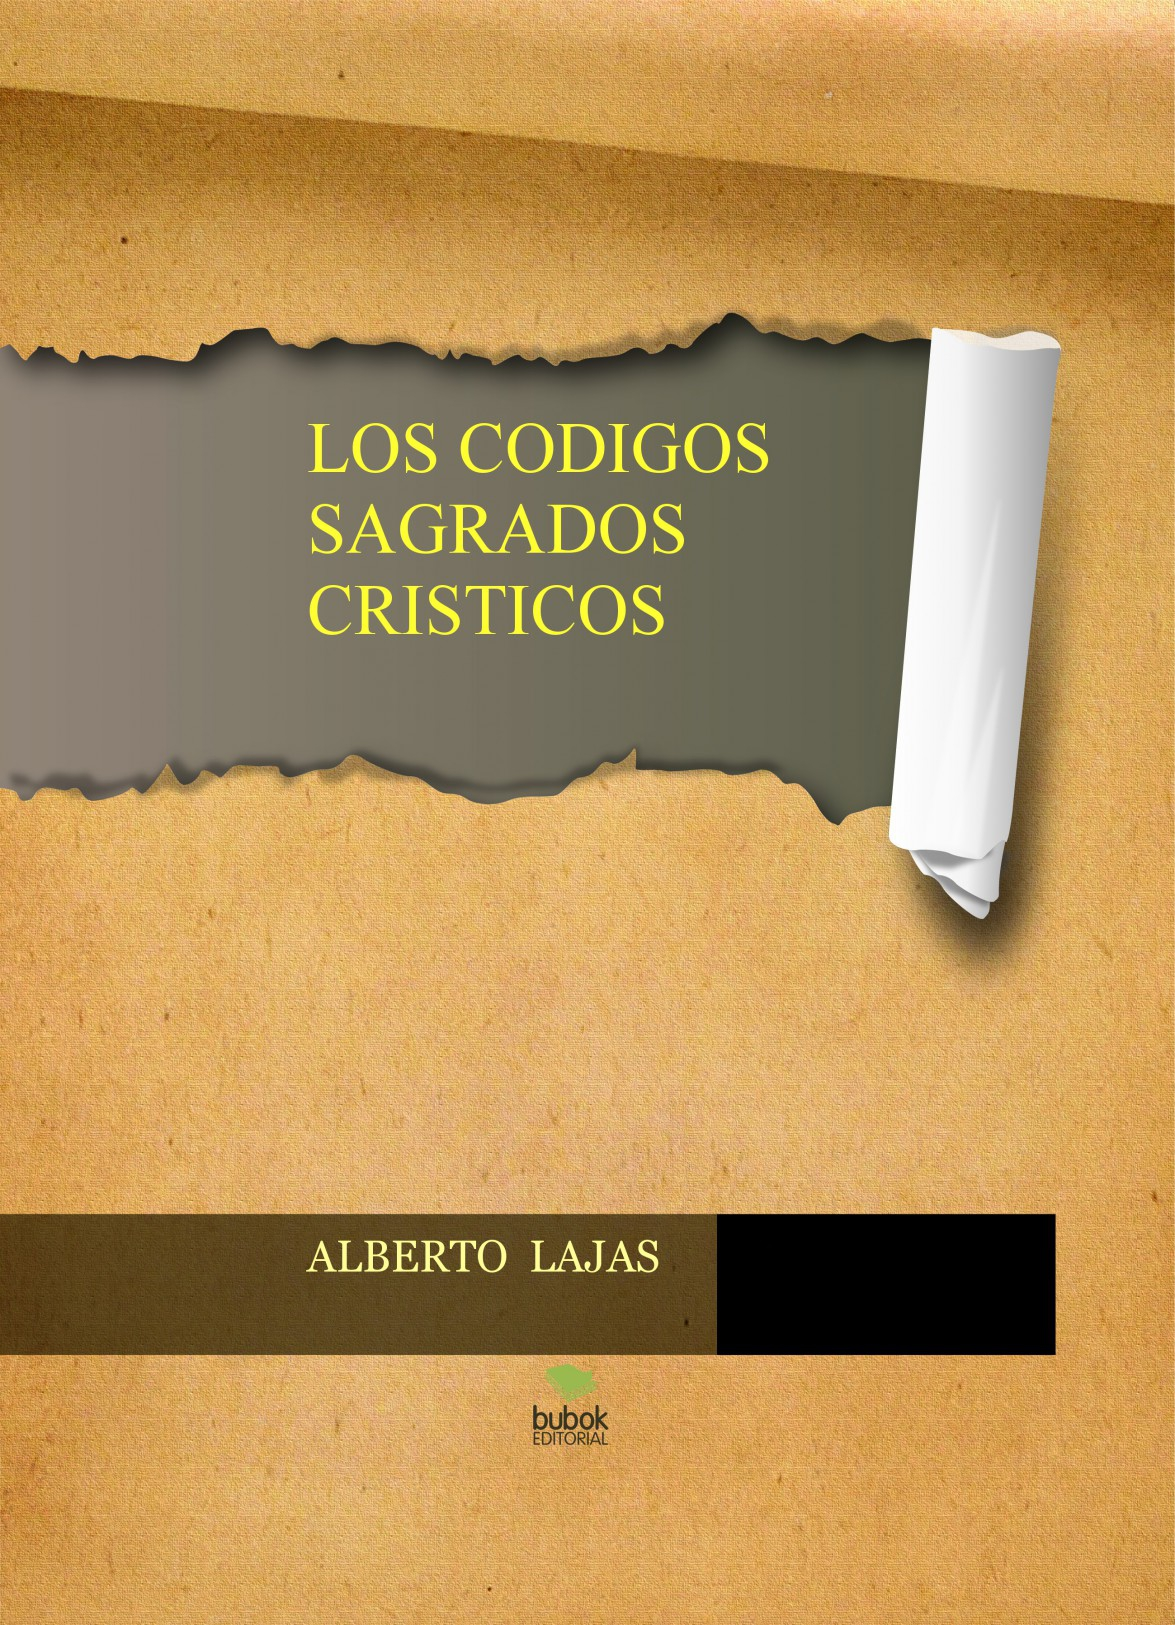 LOS CODIGOS SAGRADOS CRISTICOS ALBERTO LAJAS - PDF Free Download